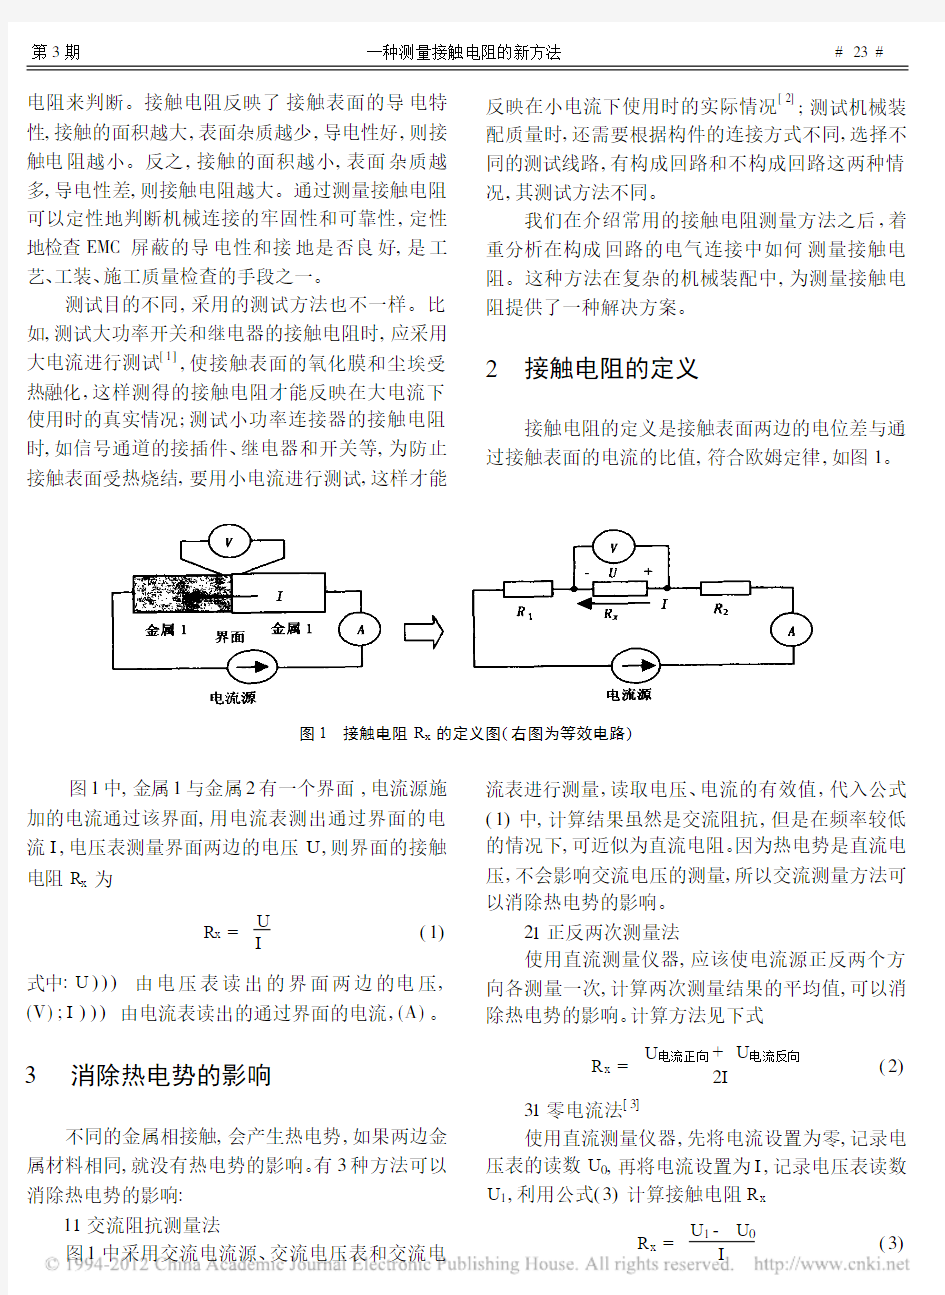 一种测量接触电阻的新方法_刘民